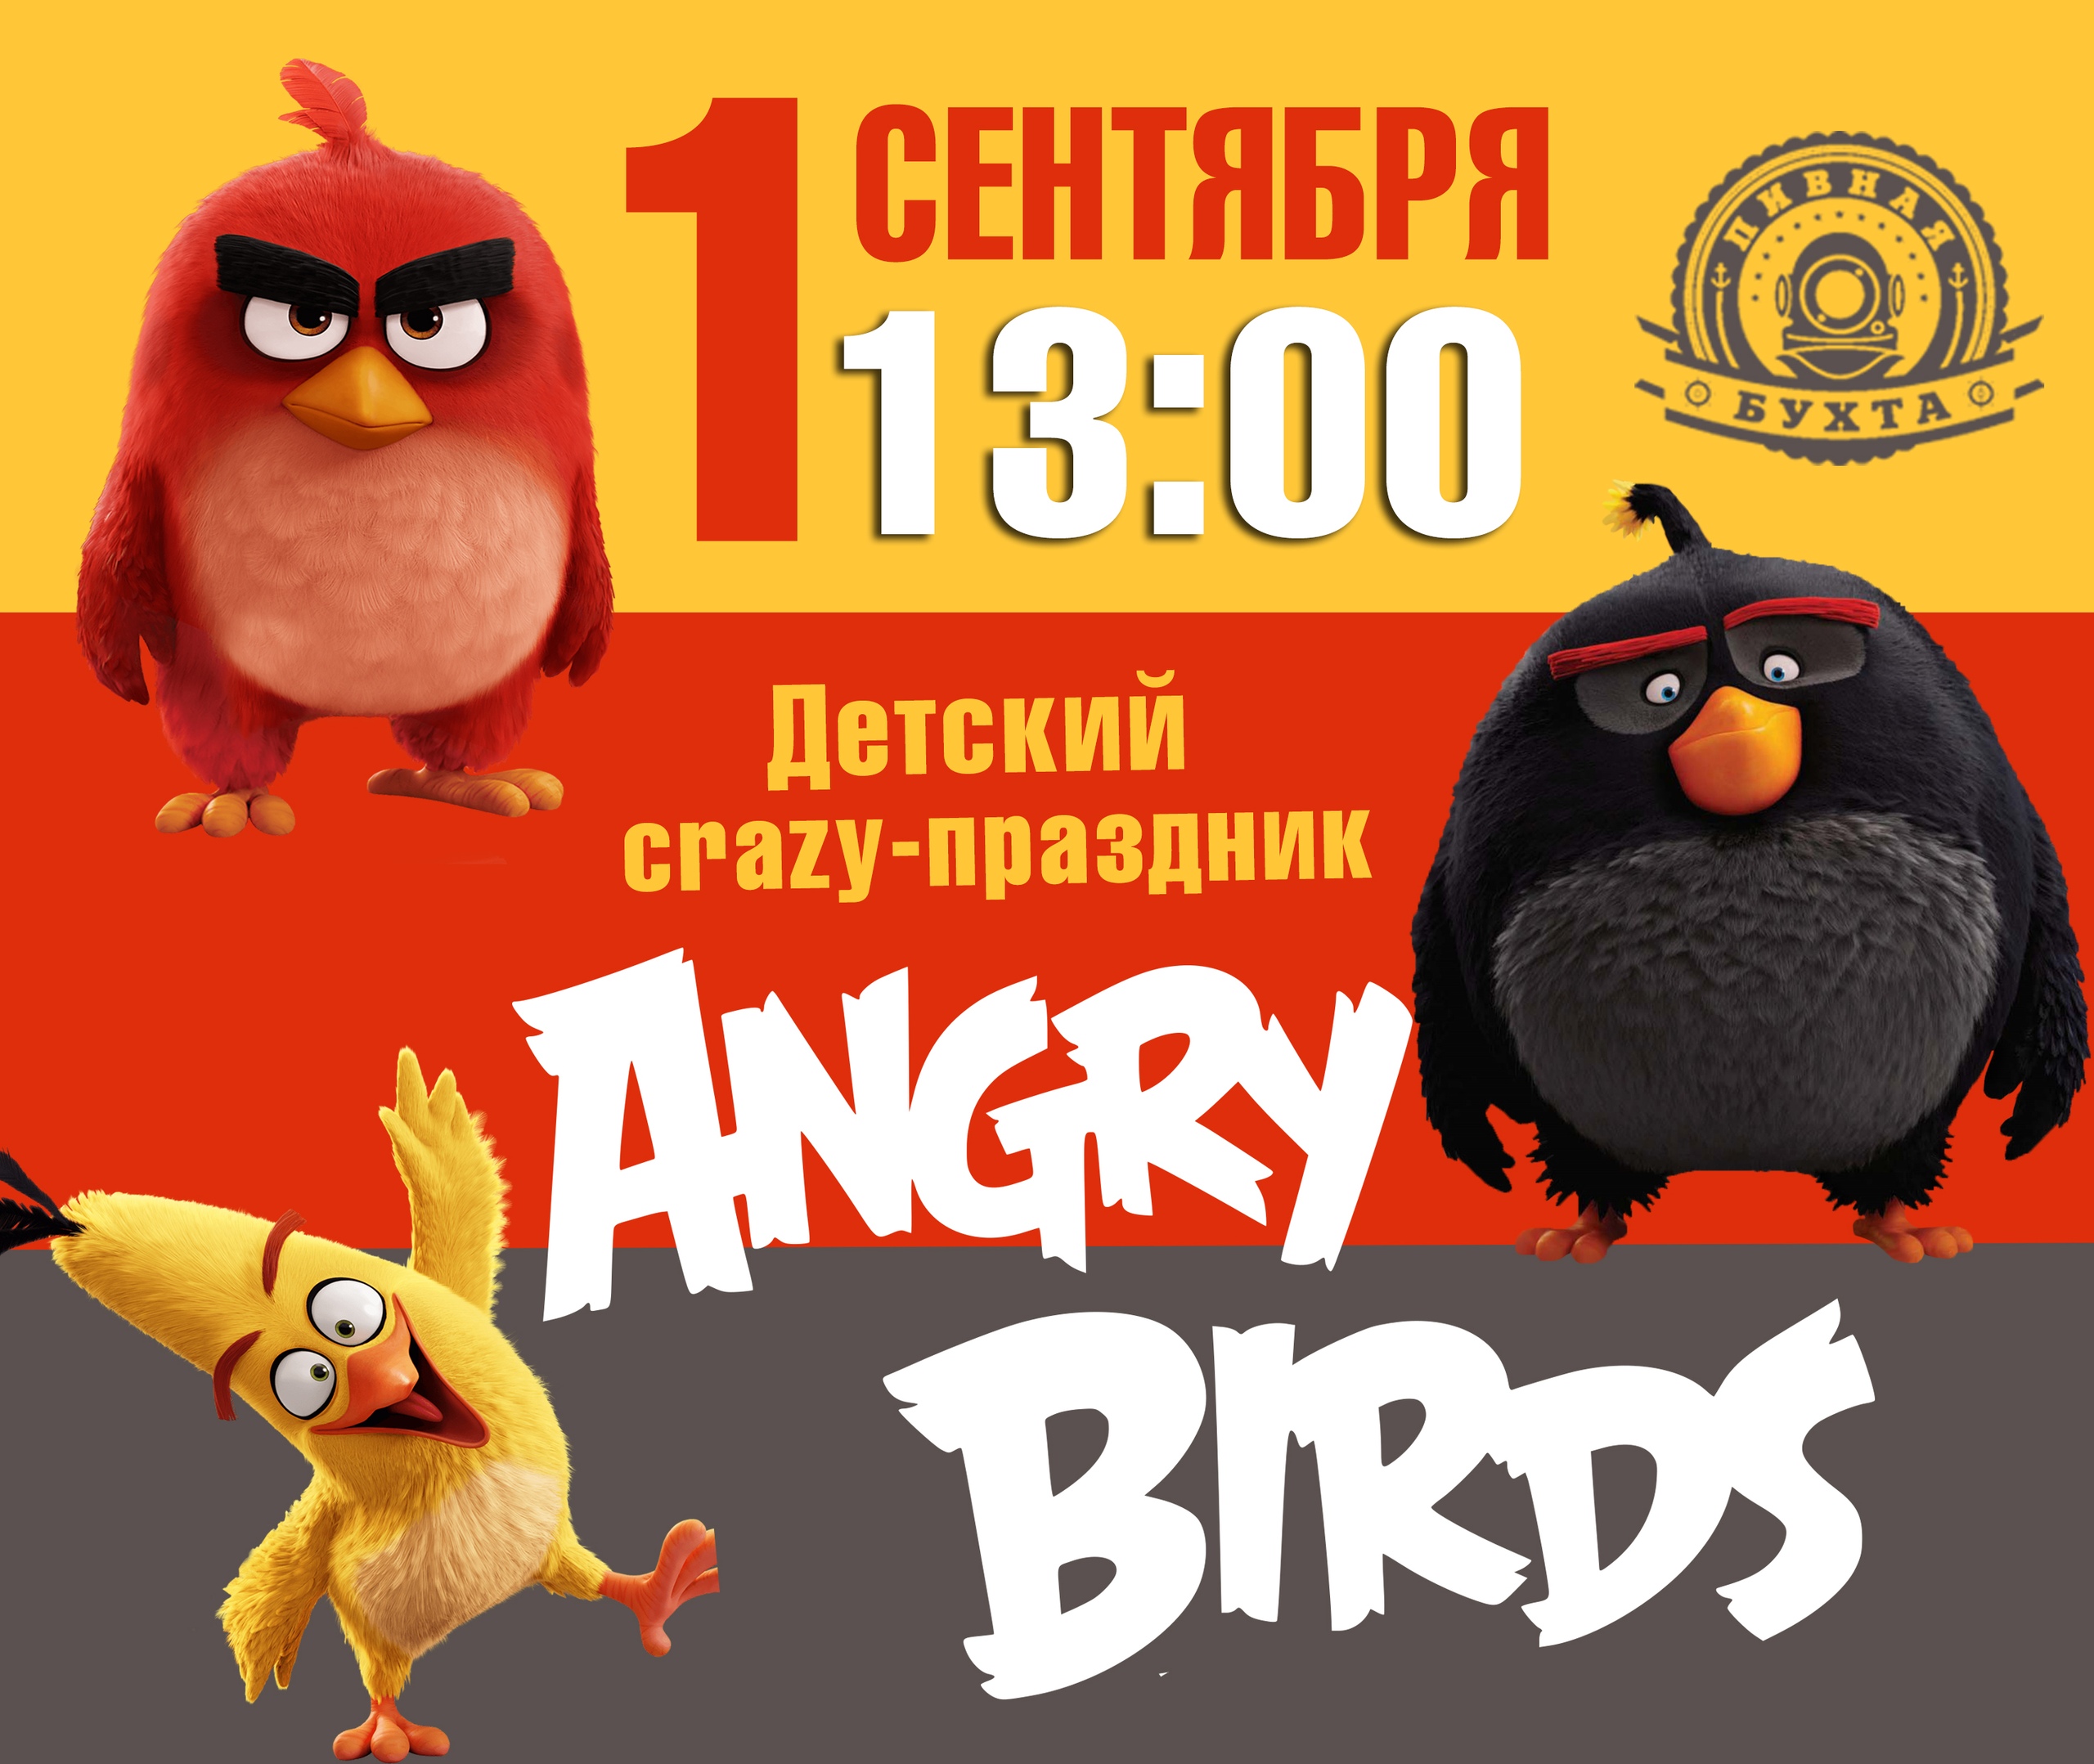 Детский праздник "Angry Birds"